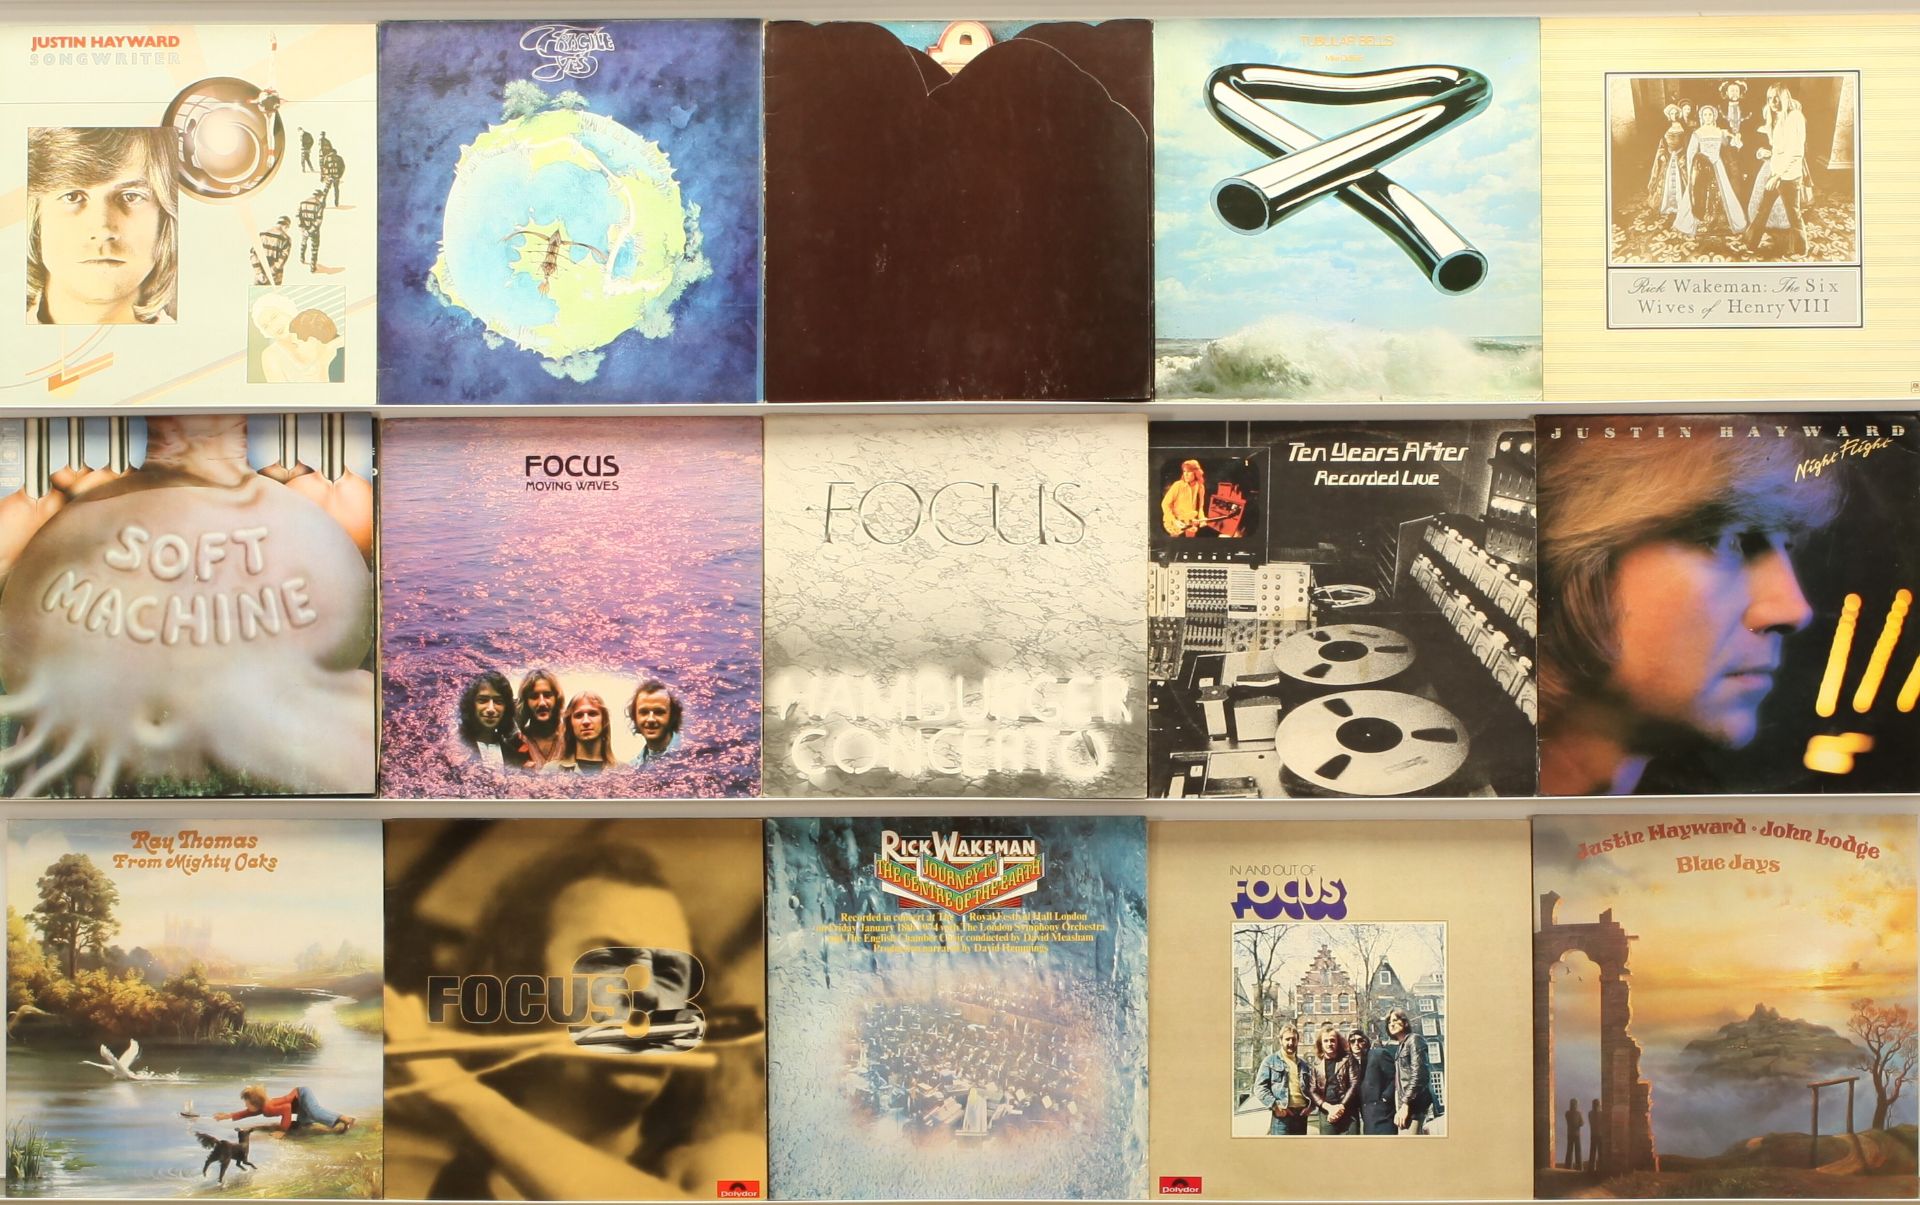 1970's Progressive Rock Albums - Yes, Rick Wakeman, Ten Years After, Focus